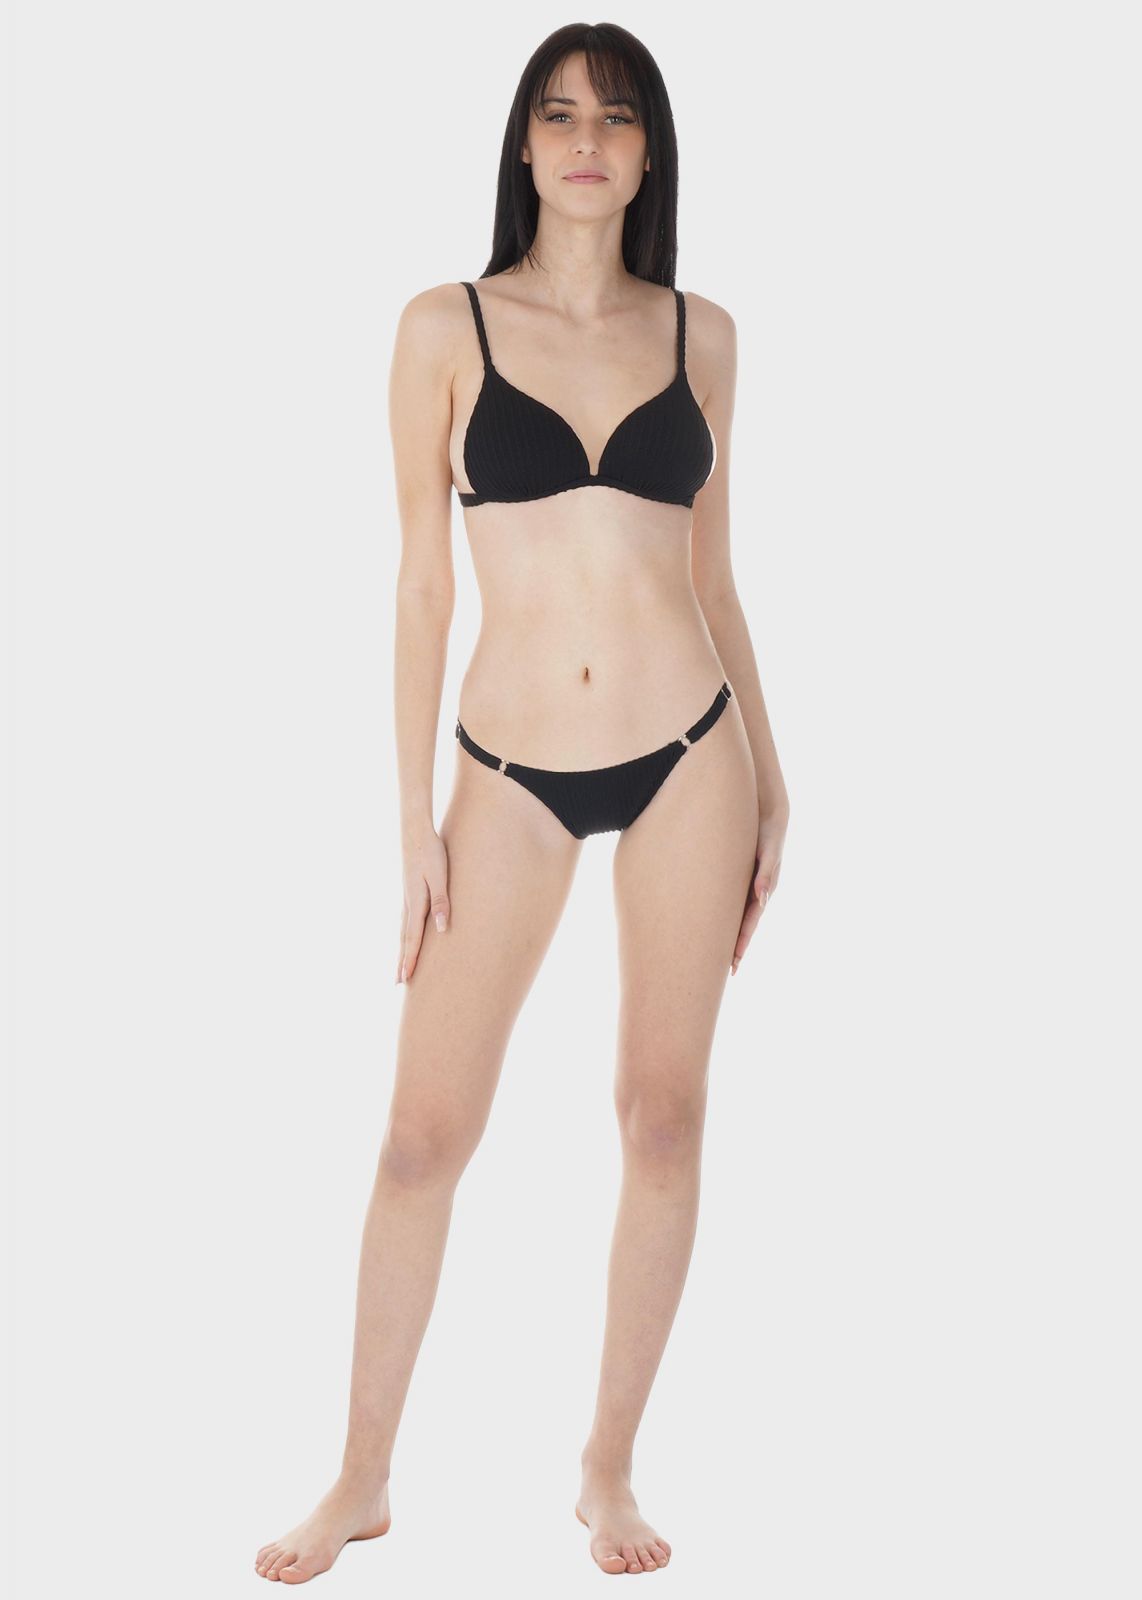 Γυναικείο set bikini μονόχρωμο ενσωματωμένη push up ενίσχυση bikini παρτό πλαϊνό ρυθμιζόμενο λουράκι.Καλύπτει B-C Cup ΜΑΥΡΟ